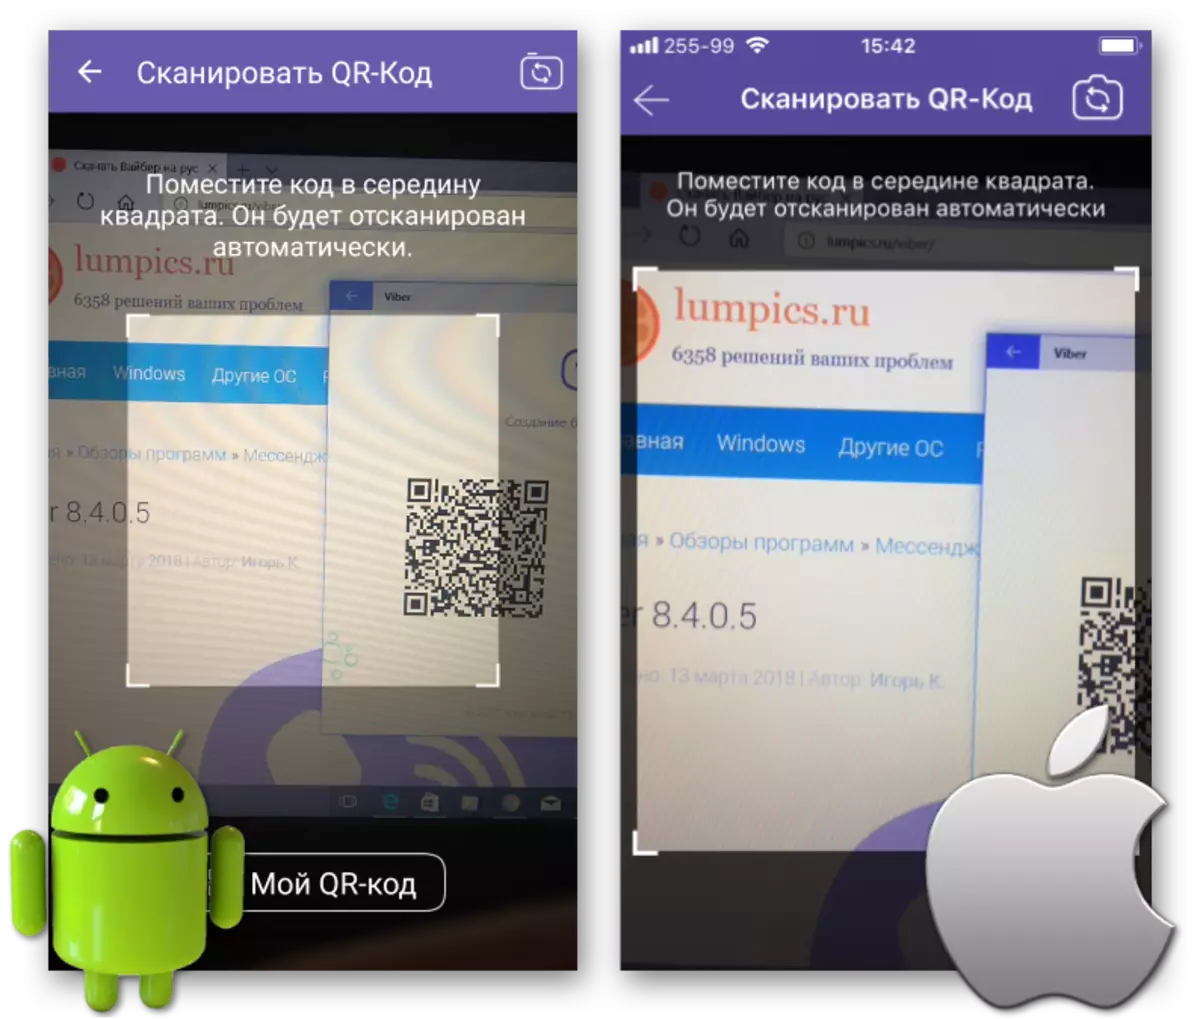 Viber ar gyfer Sgan Windows QR-cod gan ddefnyddio ffôn clyfar Android neu iPhone